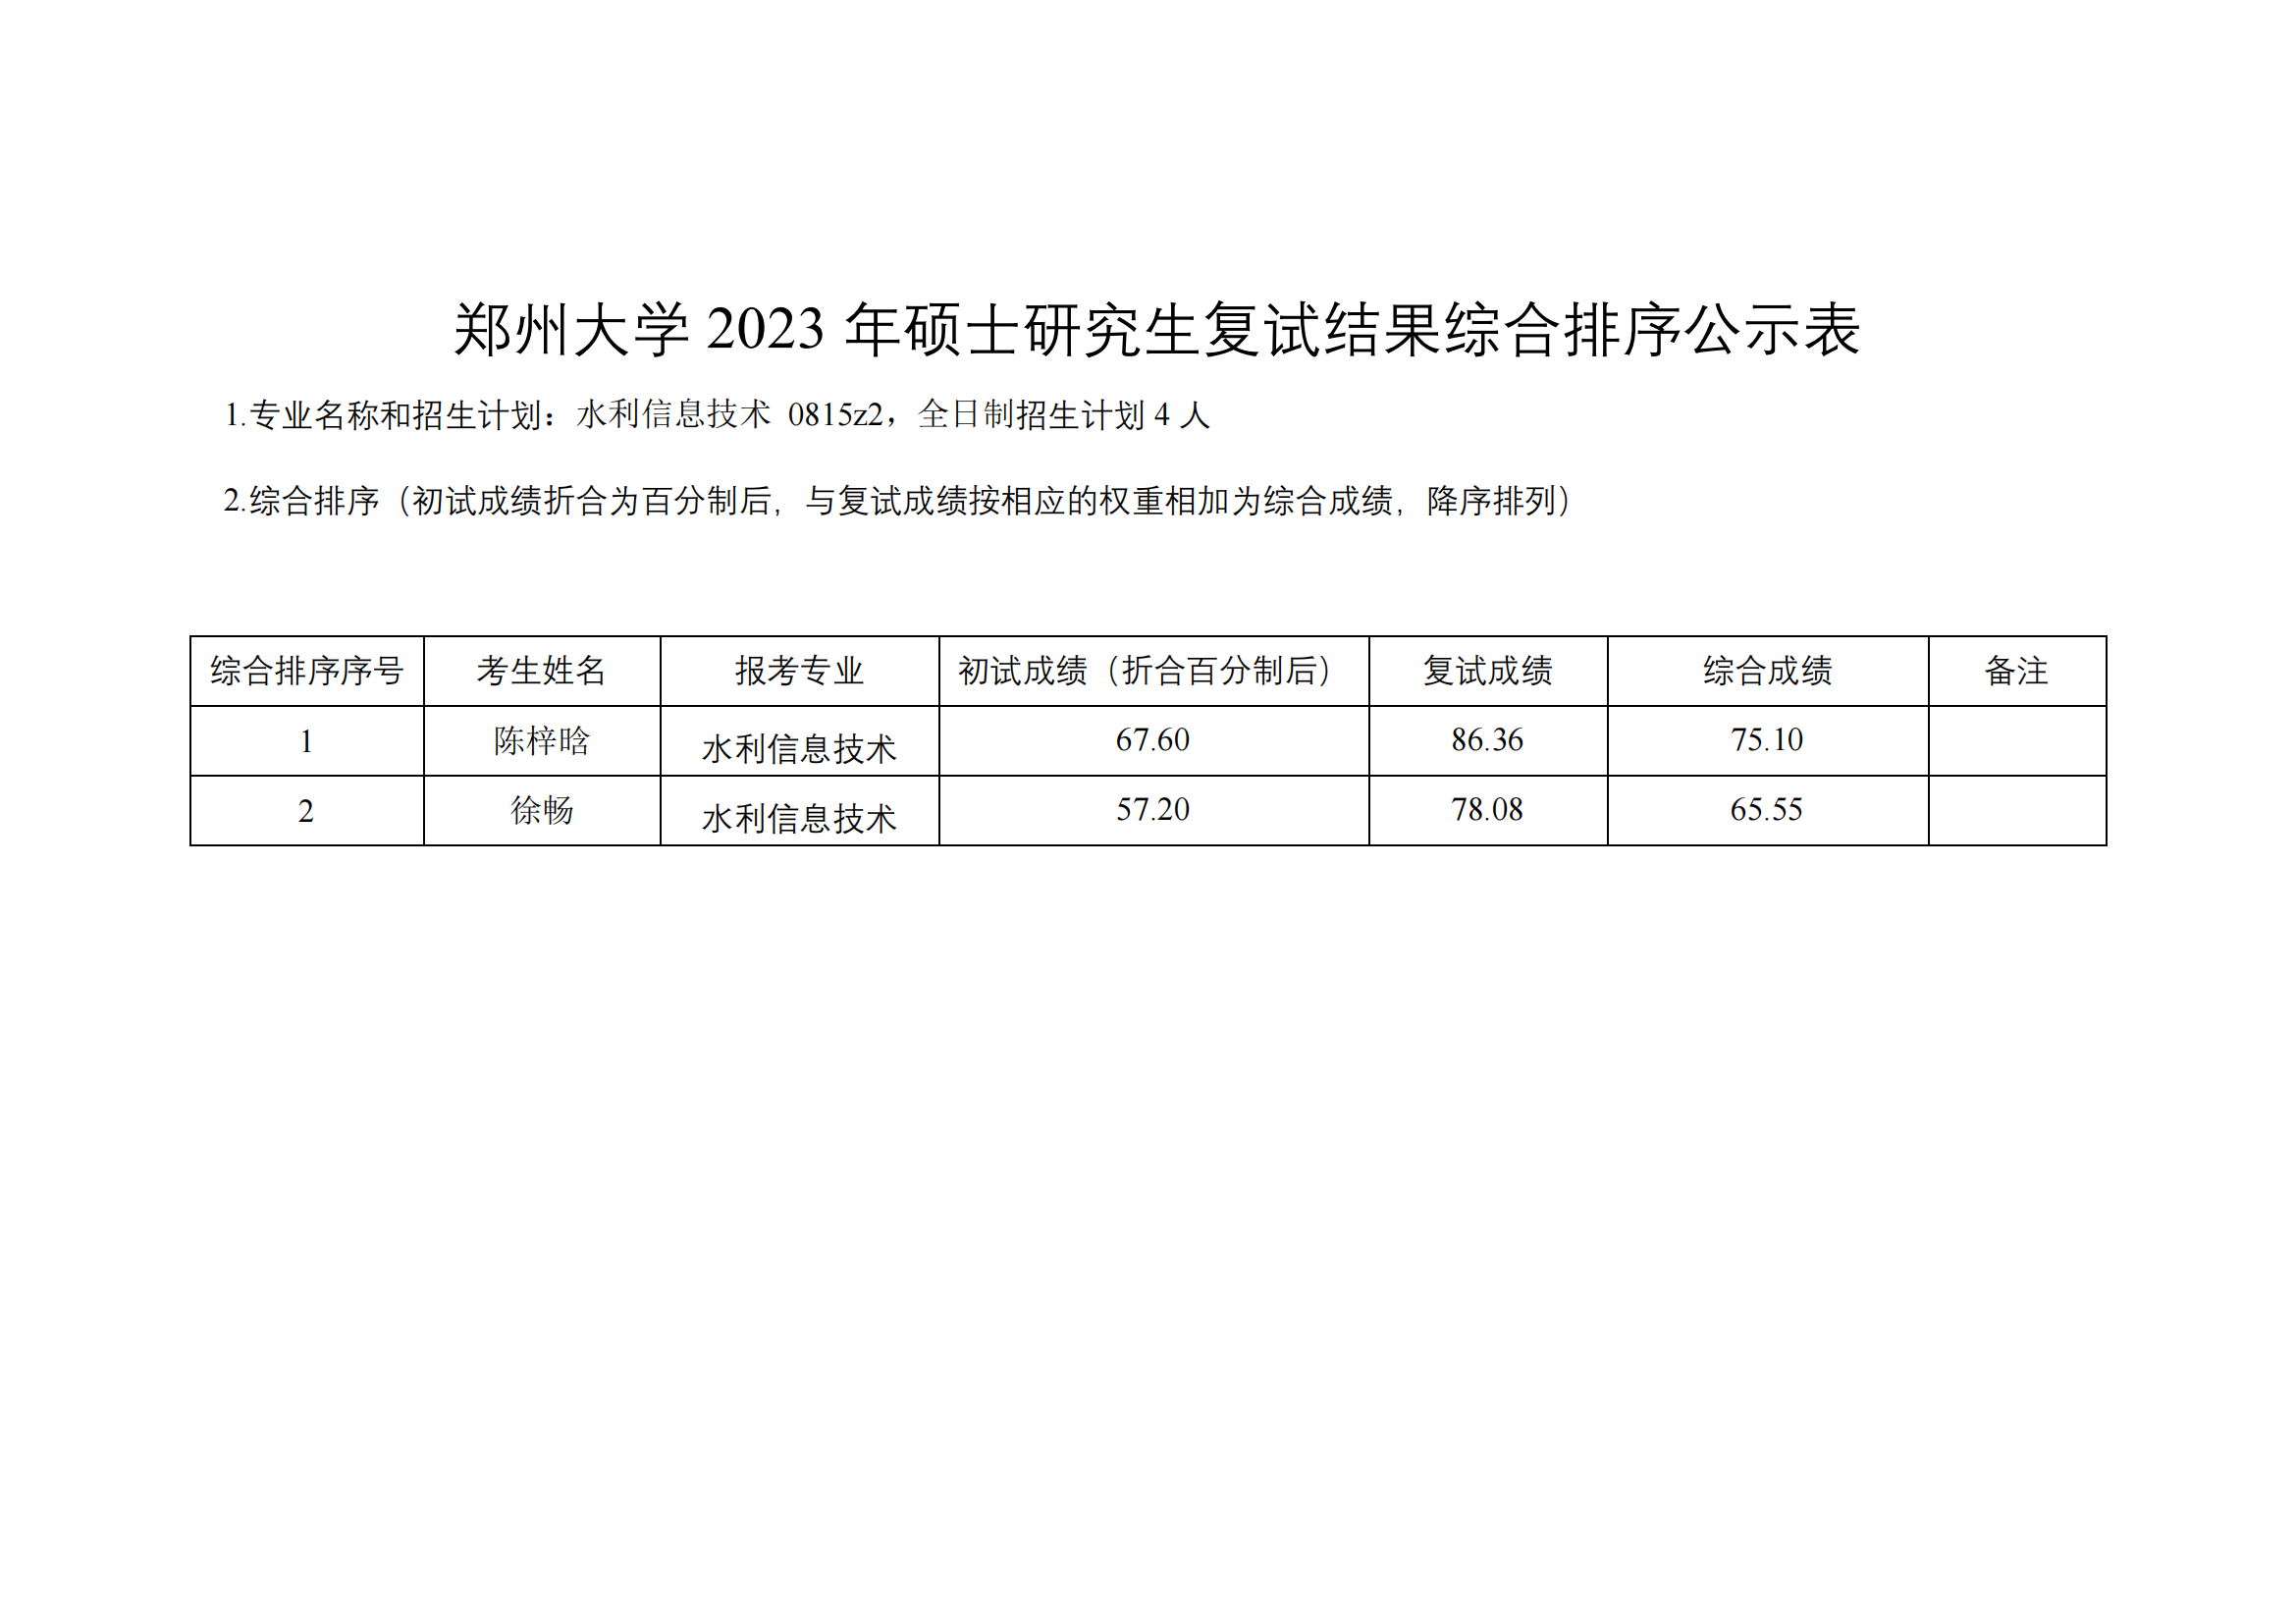 郑州大学水利与土木工程学院（原水利科学与工程学院专业方向）－2023年一志愿硕士研究生复试结果综合排序公示表-20230402(2)_06.png